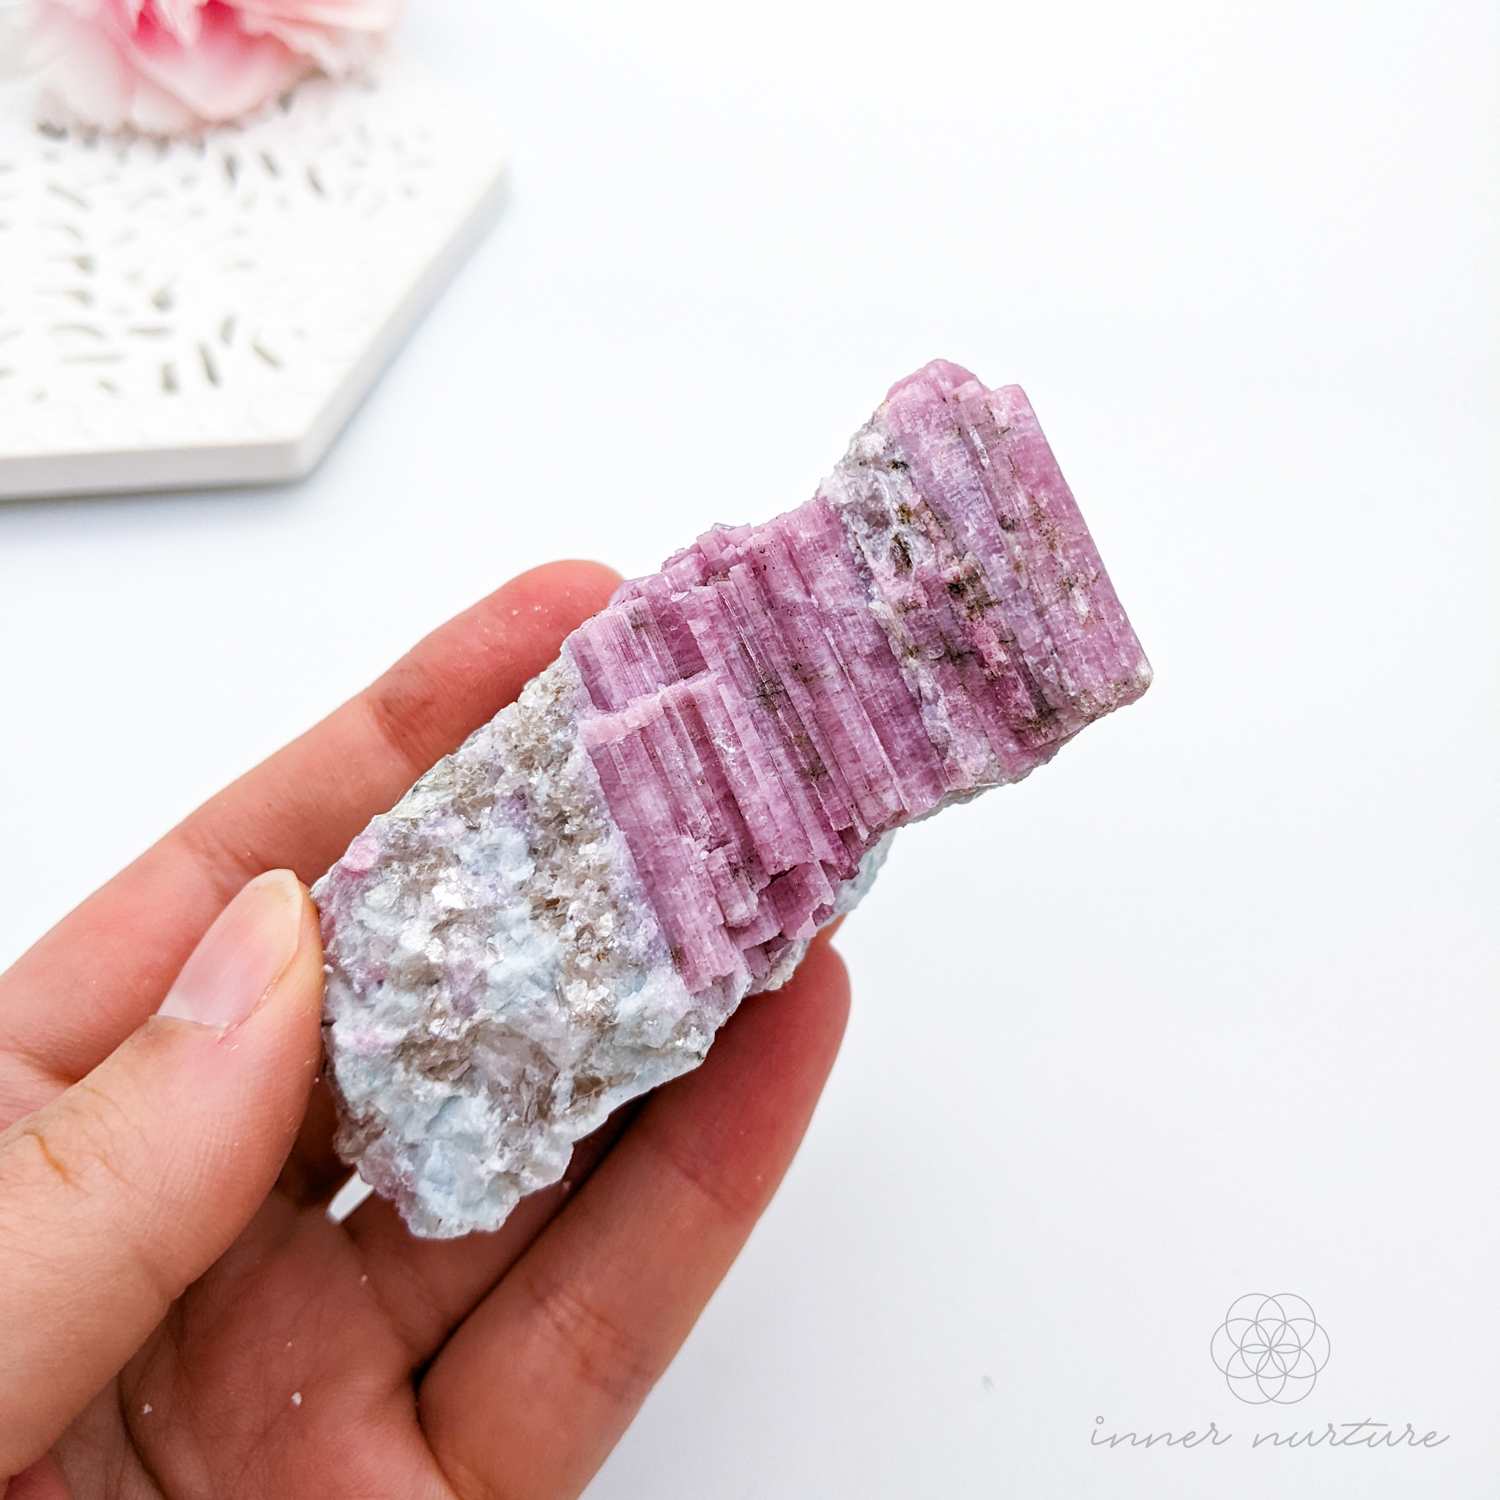 pink tourmaline in matrix raw specimen - inner nurture online crystal shop